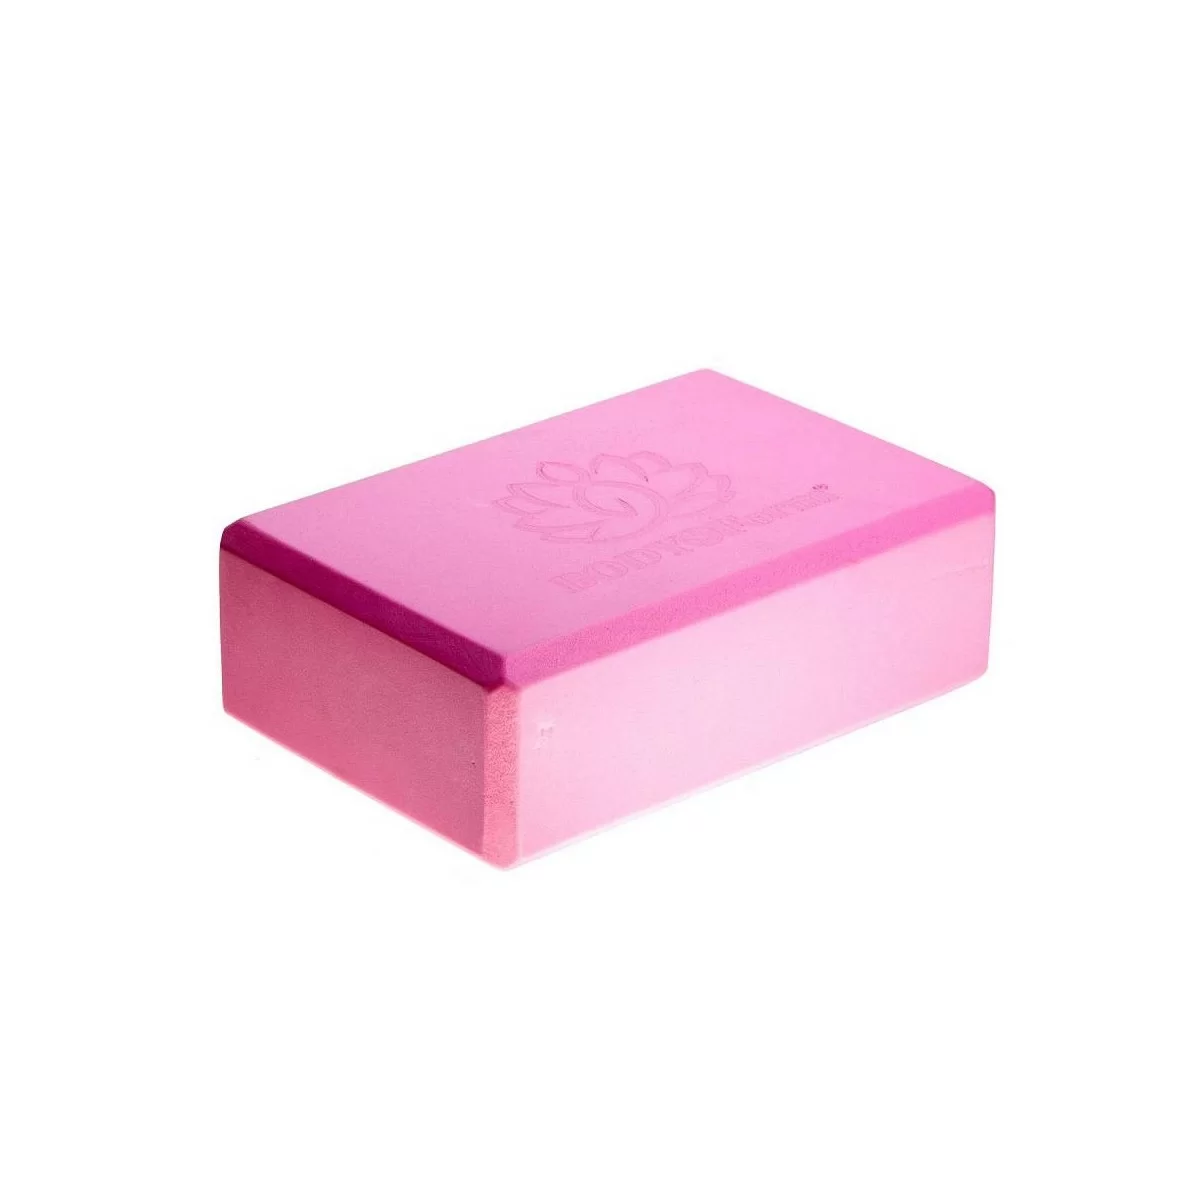 Фото Блок для йоги BF-YB02 розовый со склада магазина СпортЕВ